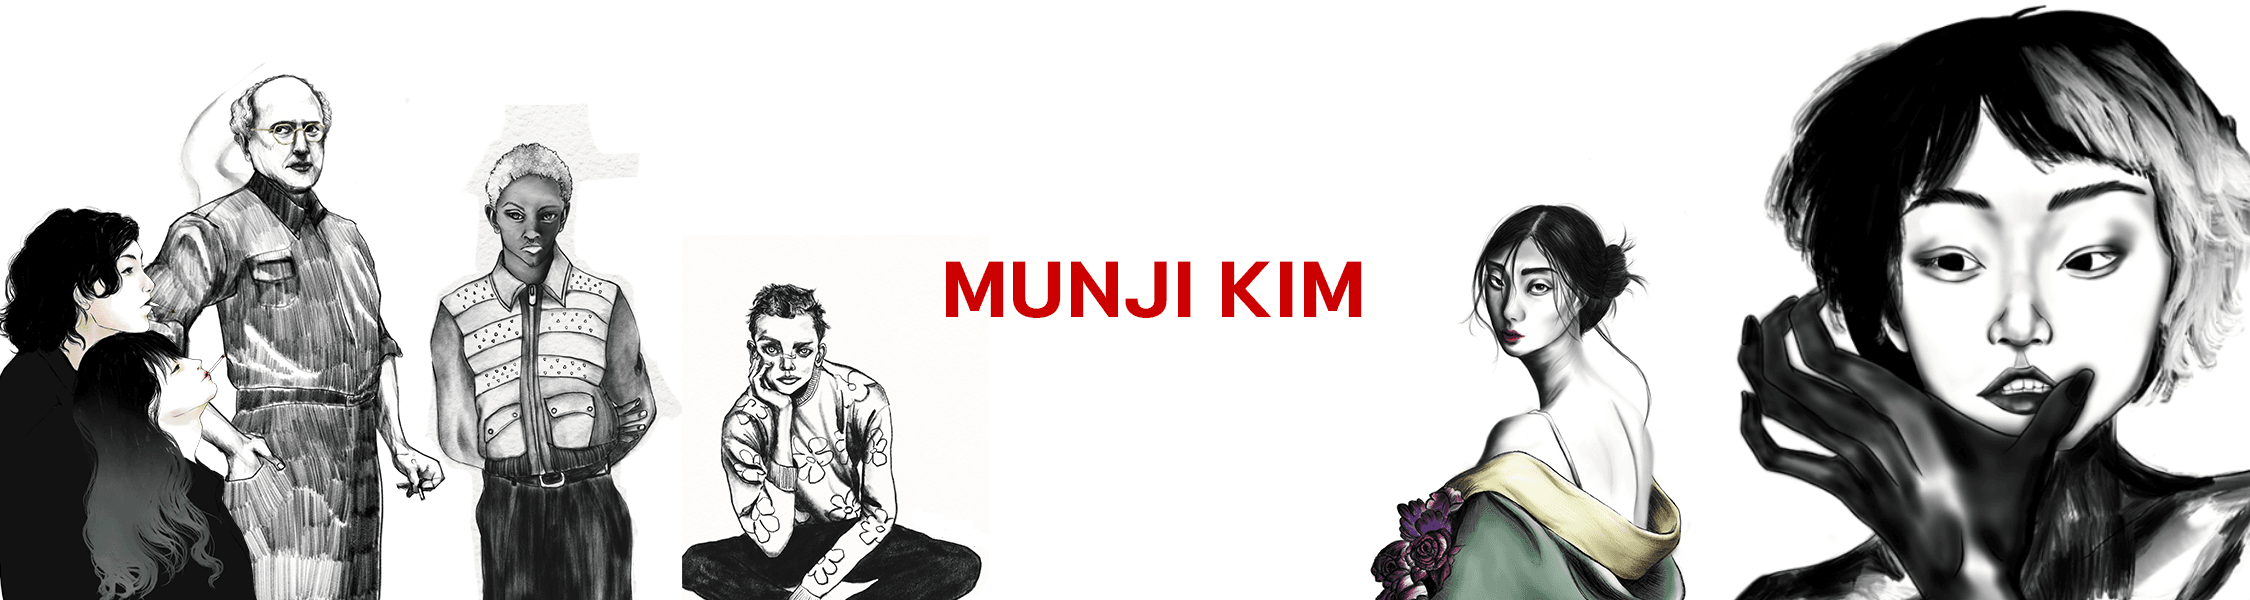 MunjiKim banner